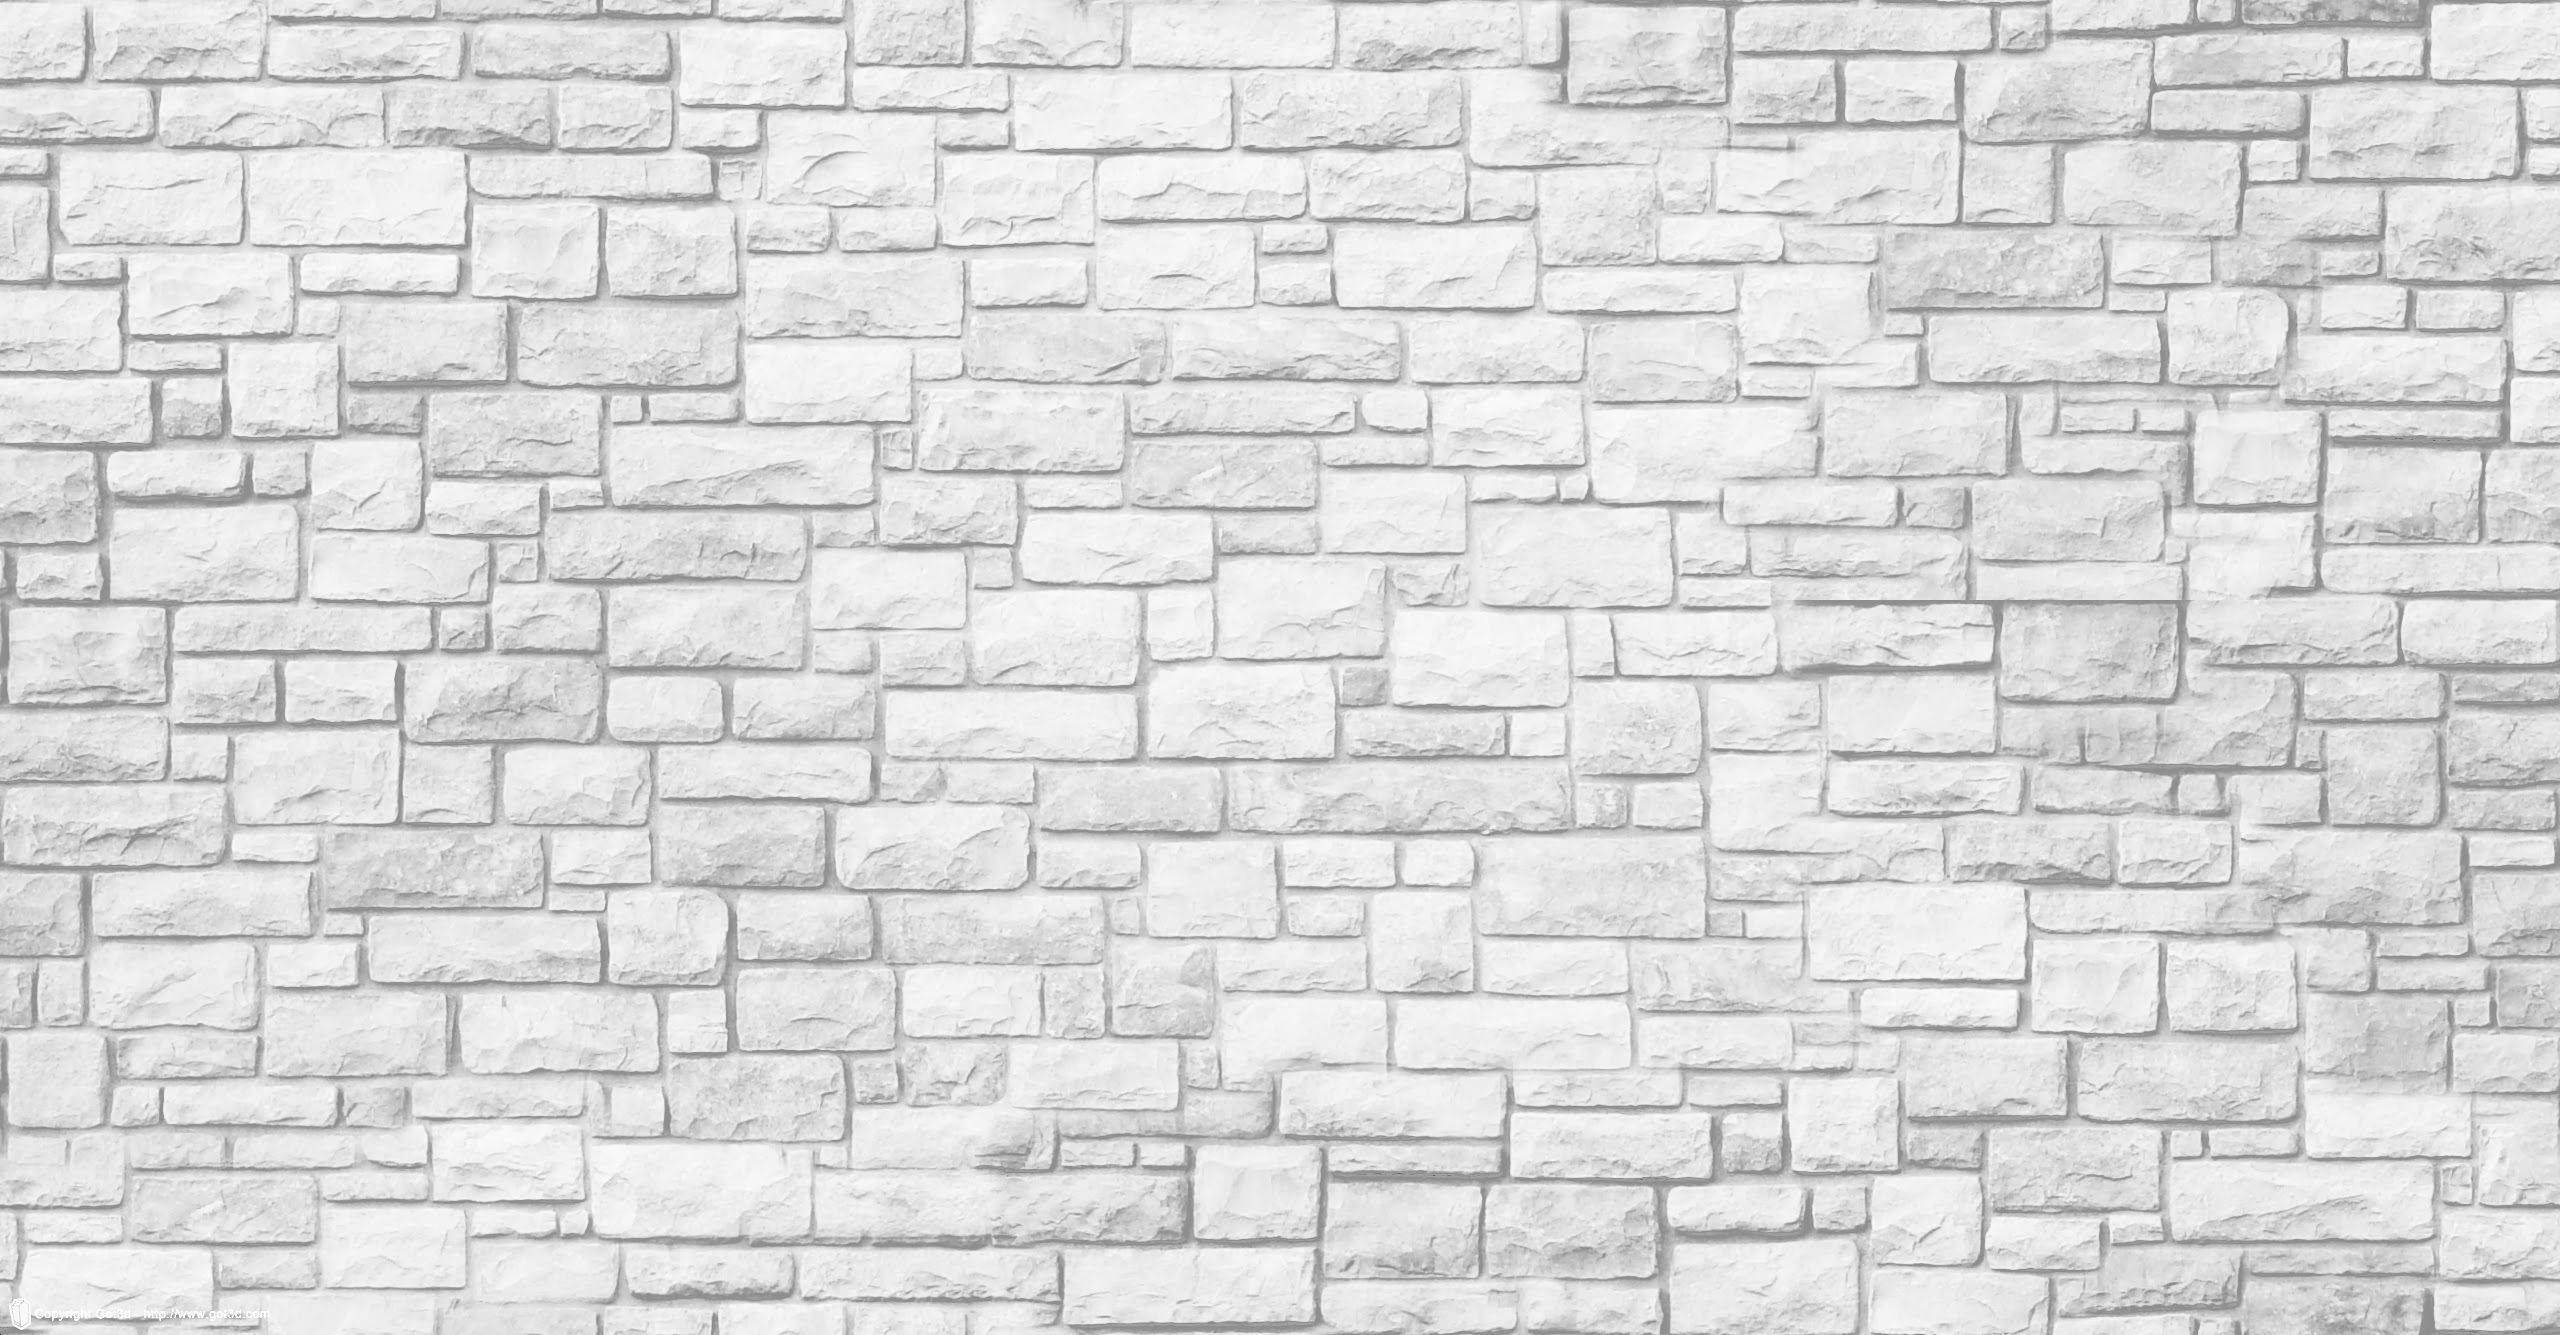 white stone wall texture - Google Search | saso's den | Pinterest ...